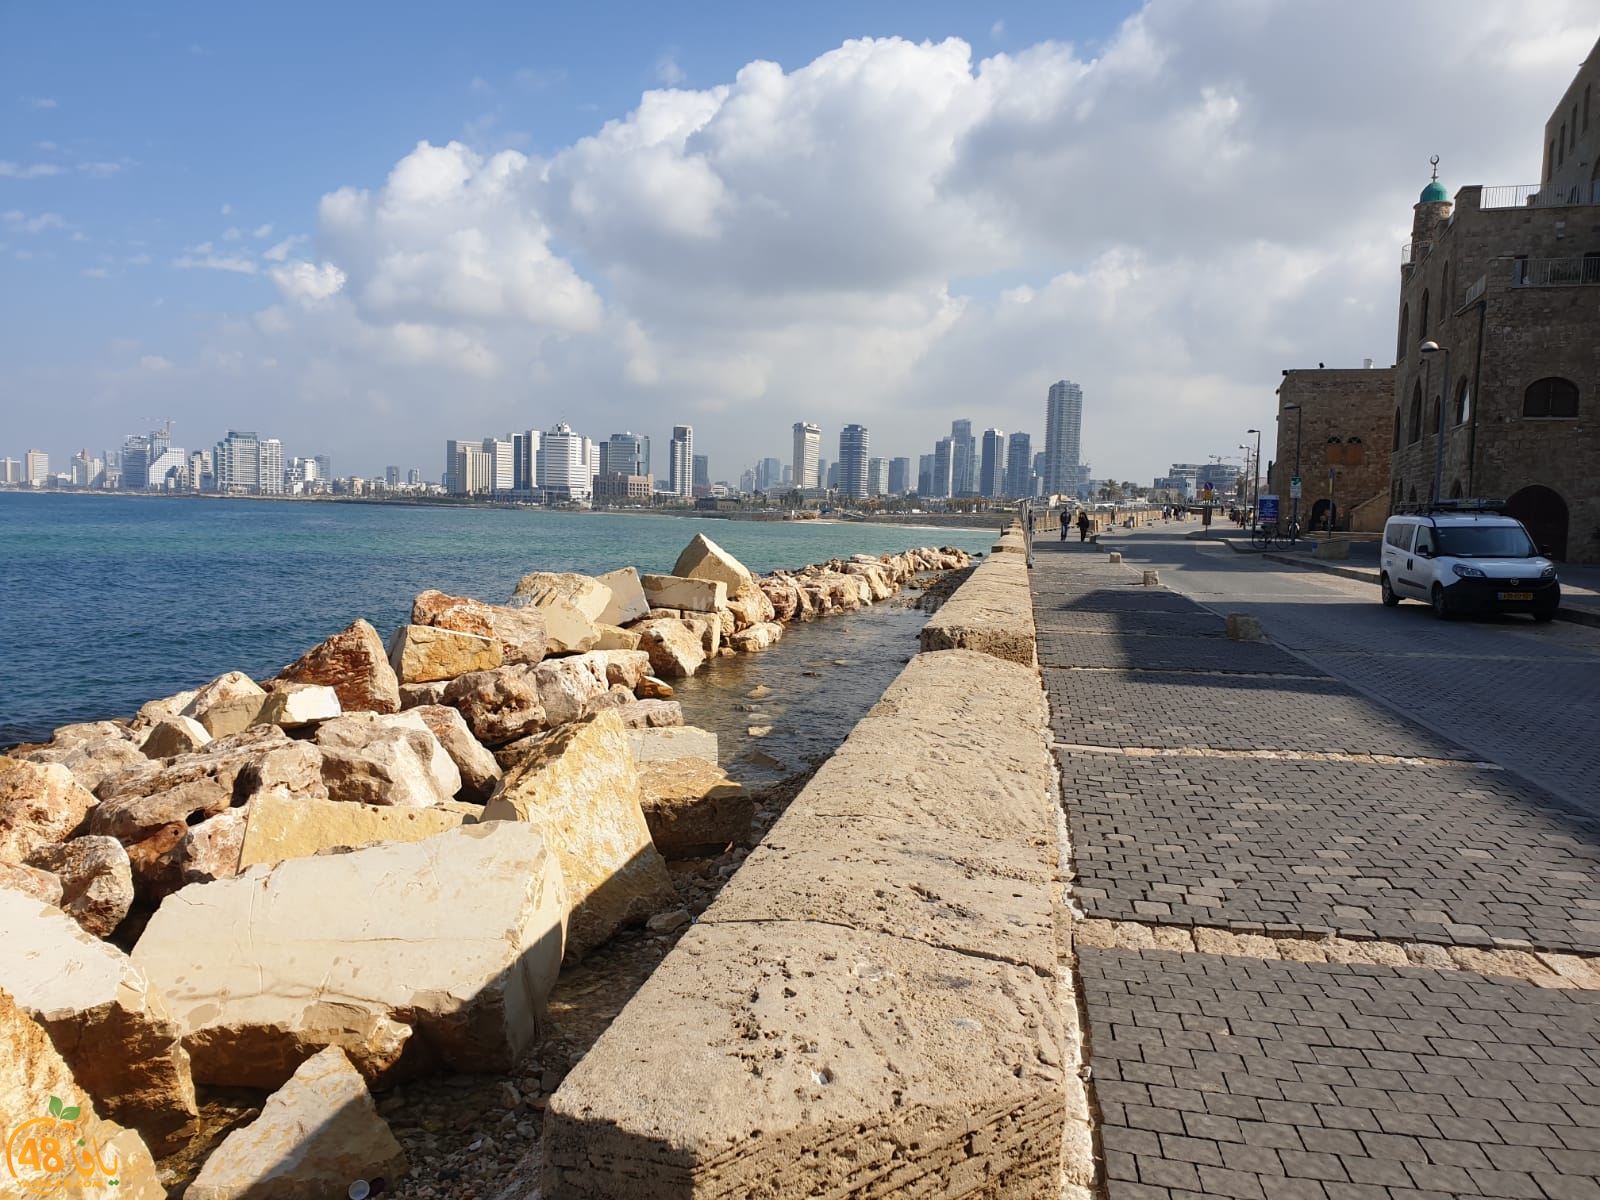  فيديو: وضع صخور ومتاريس على مدخل ميناء يافا الشمالي